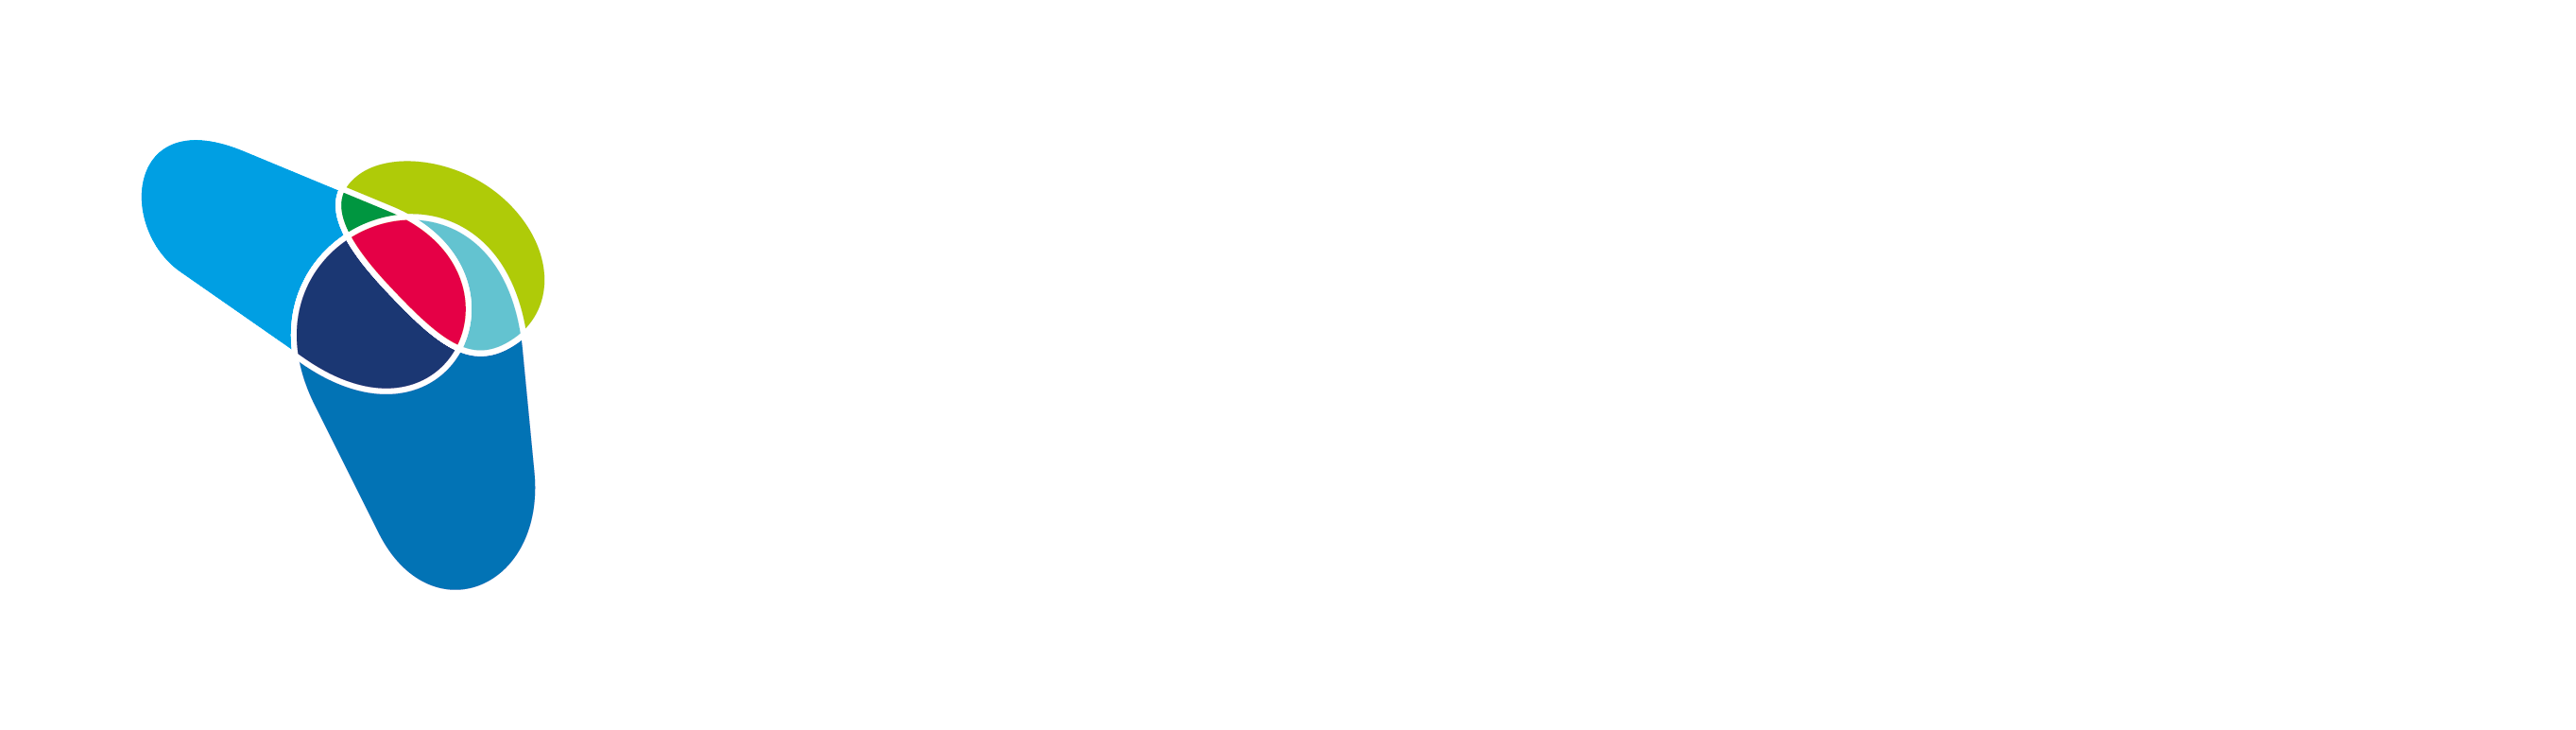 Logo Dr. Hernan Vazquez Color y Blanco